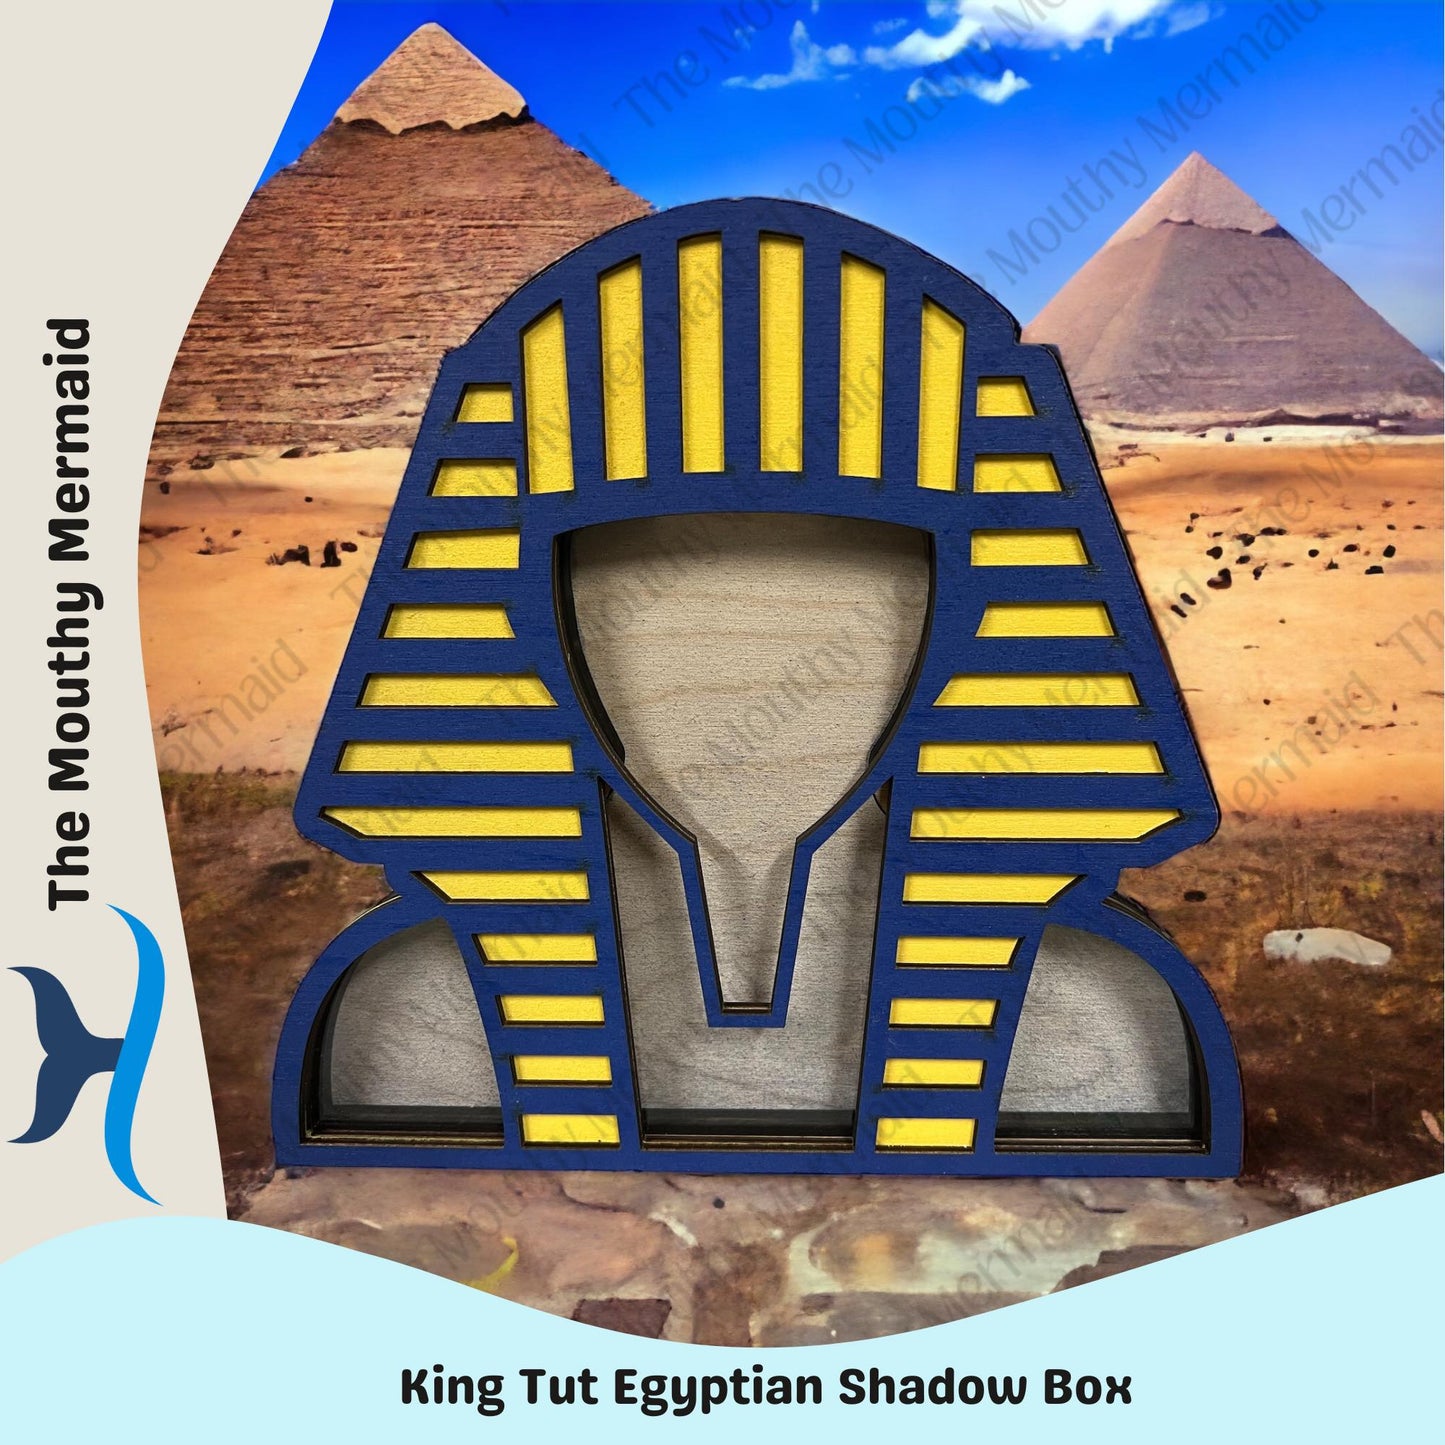 Egyptian King Tut Shadow Box Display